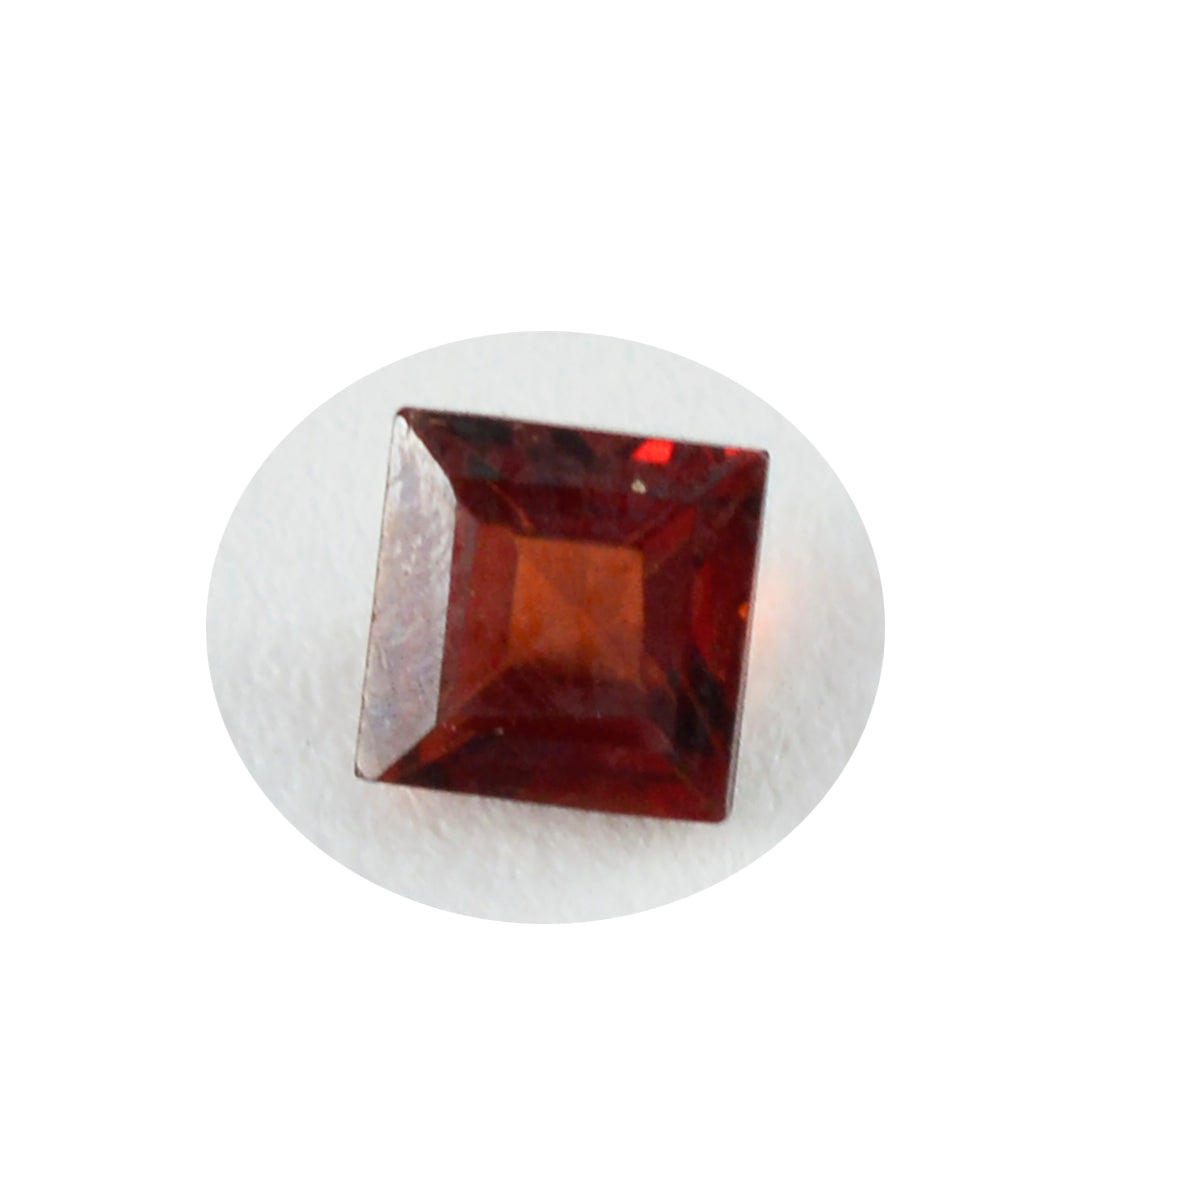 riyogems 1шт натуральный красный гранат ограненный 7x7 мм квадратной формы камень привлекательного качества